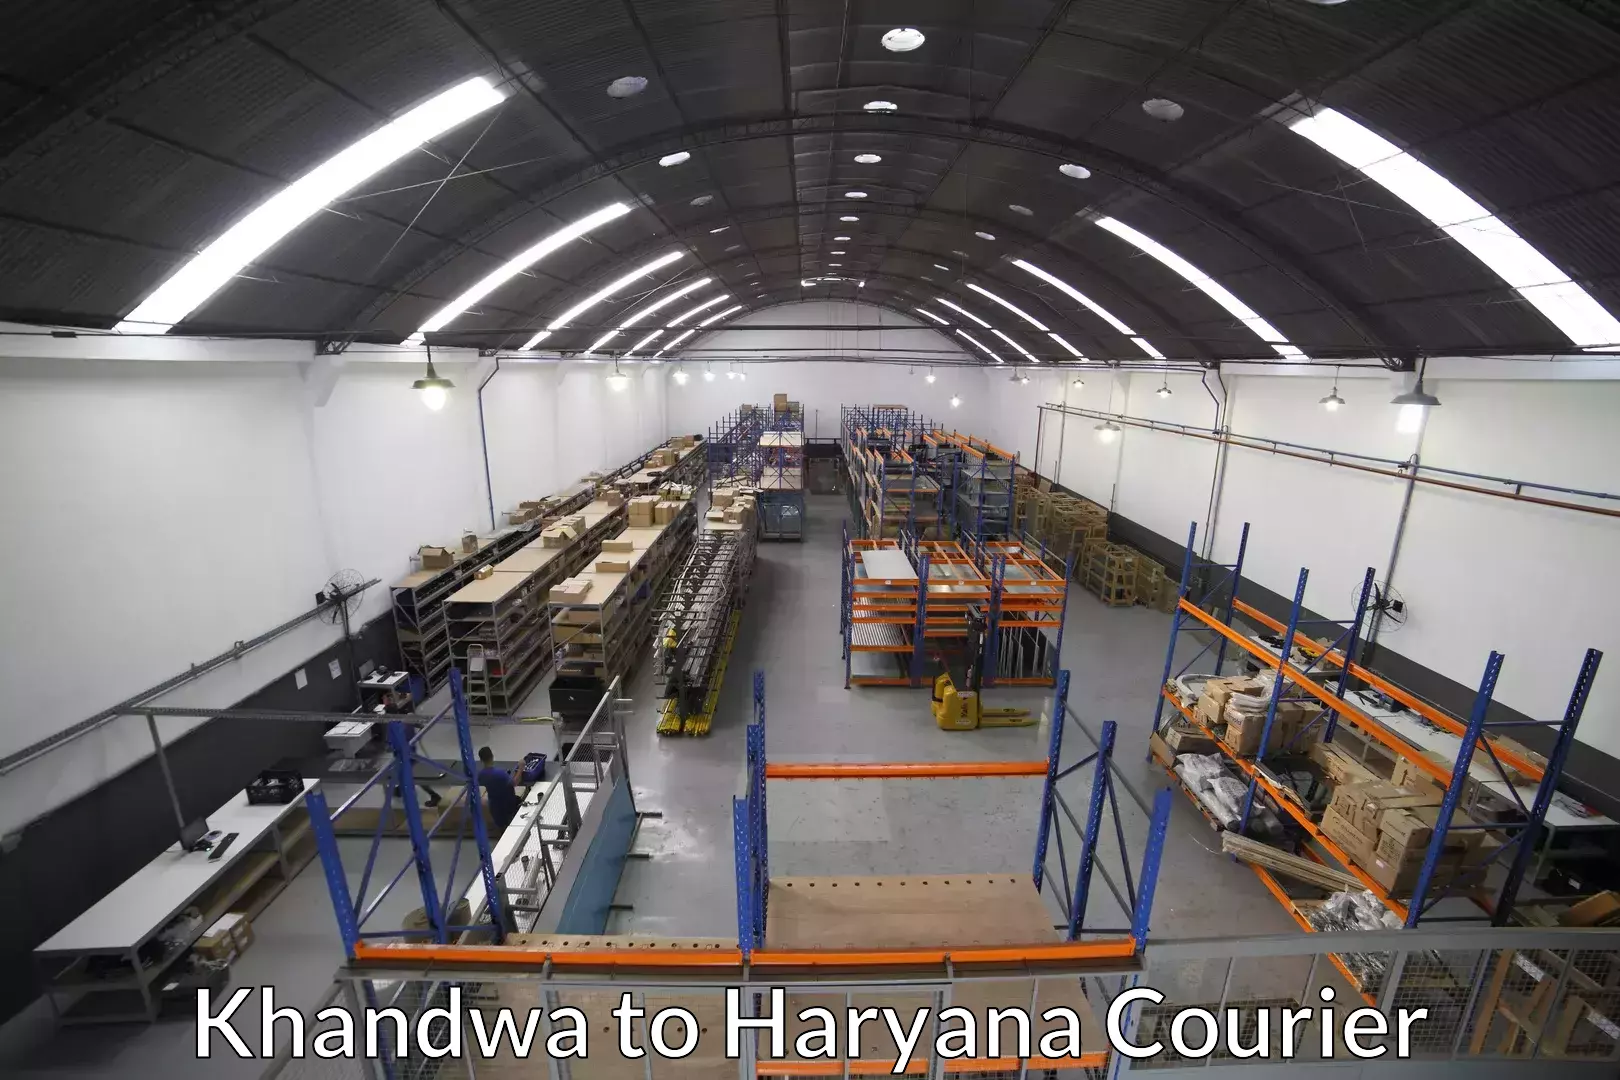 Door-to-door relocation services in Khandwa to Haryana